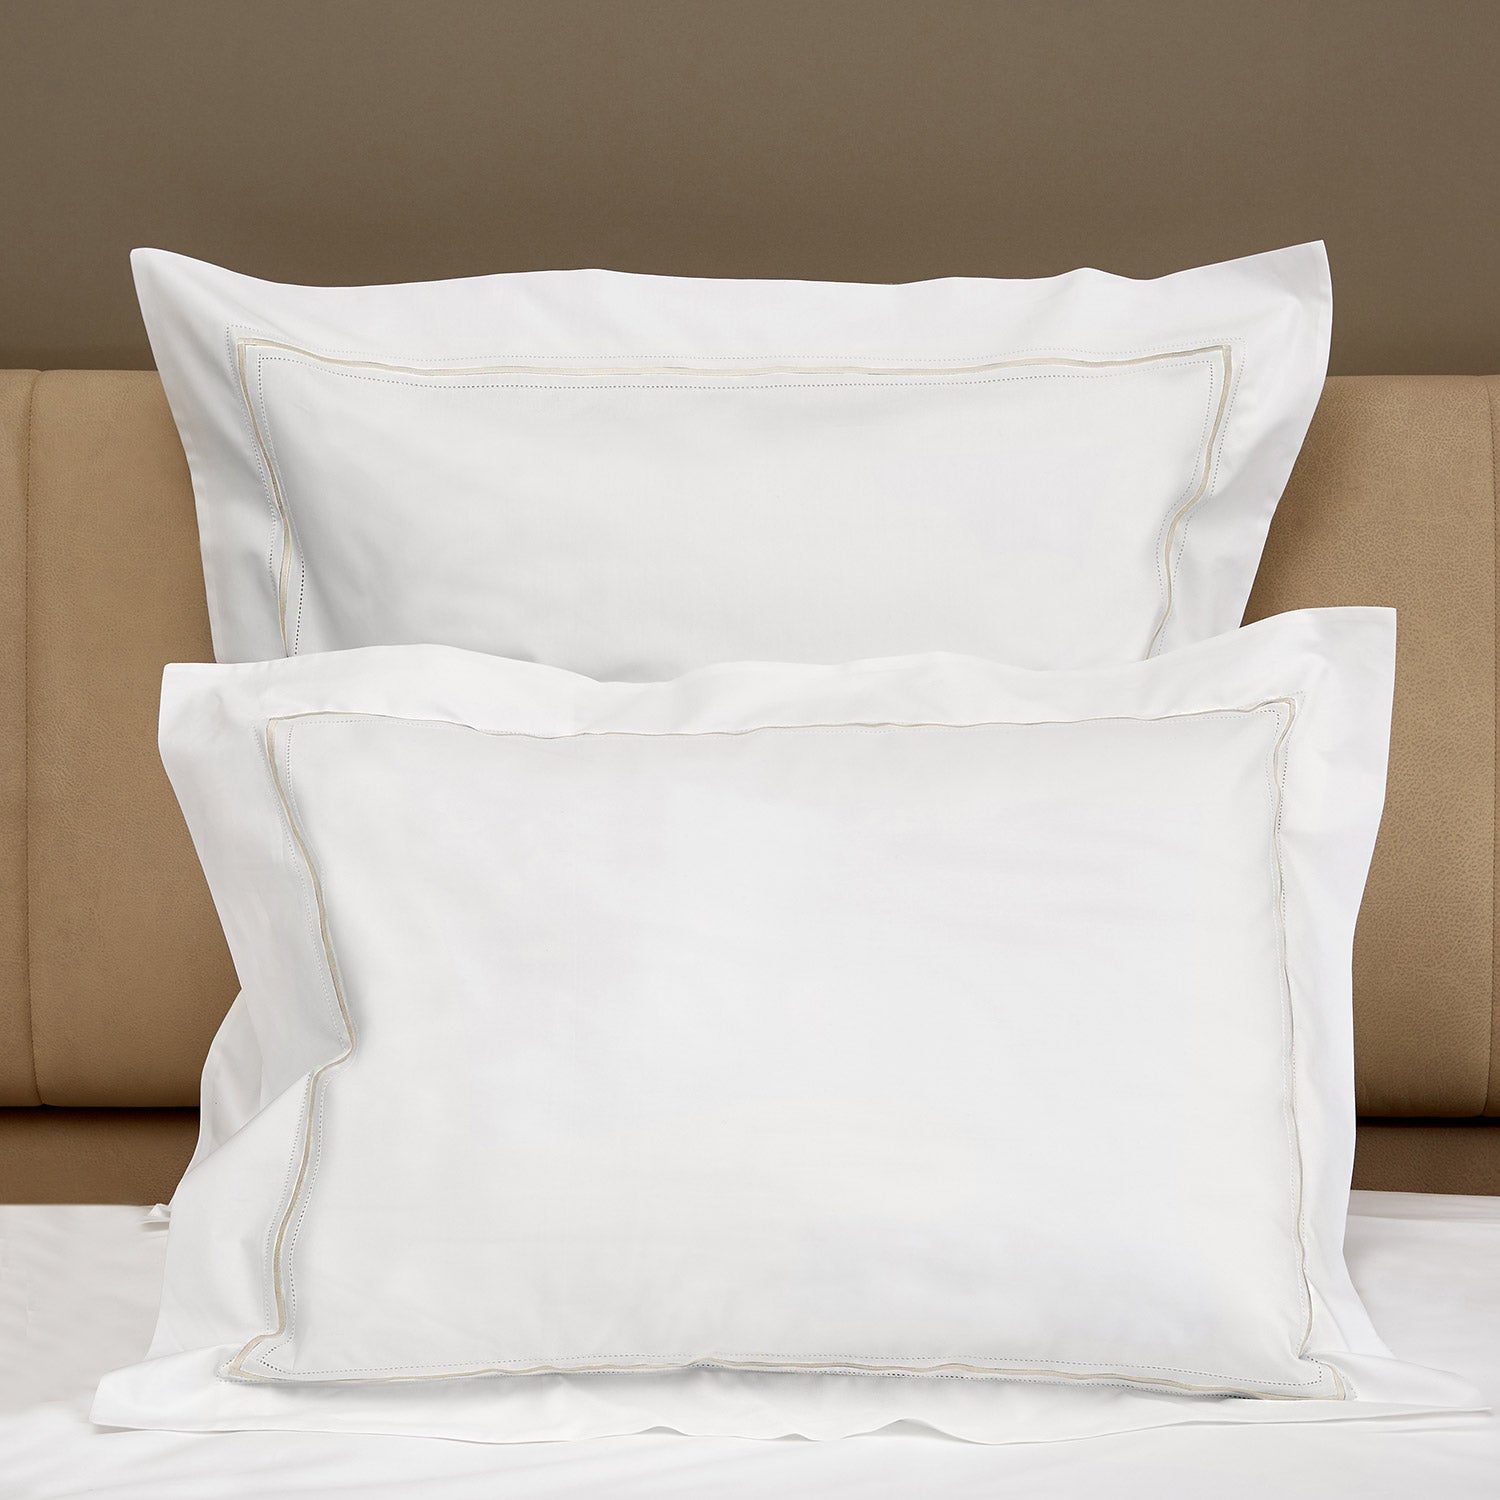 Gramercy Duvet & Shams, White/Ivory Pillow Sham / Standard